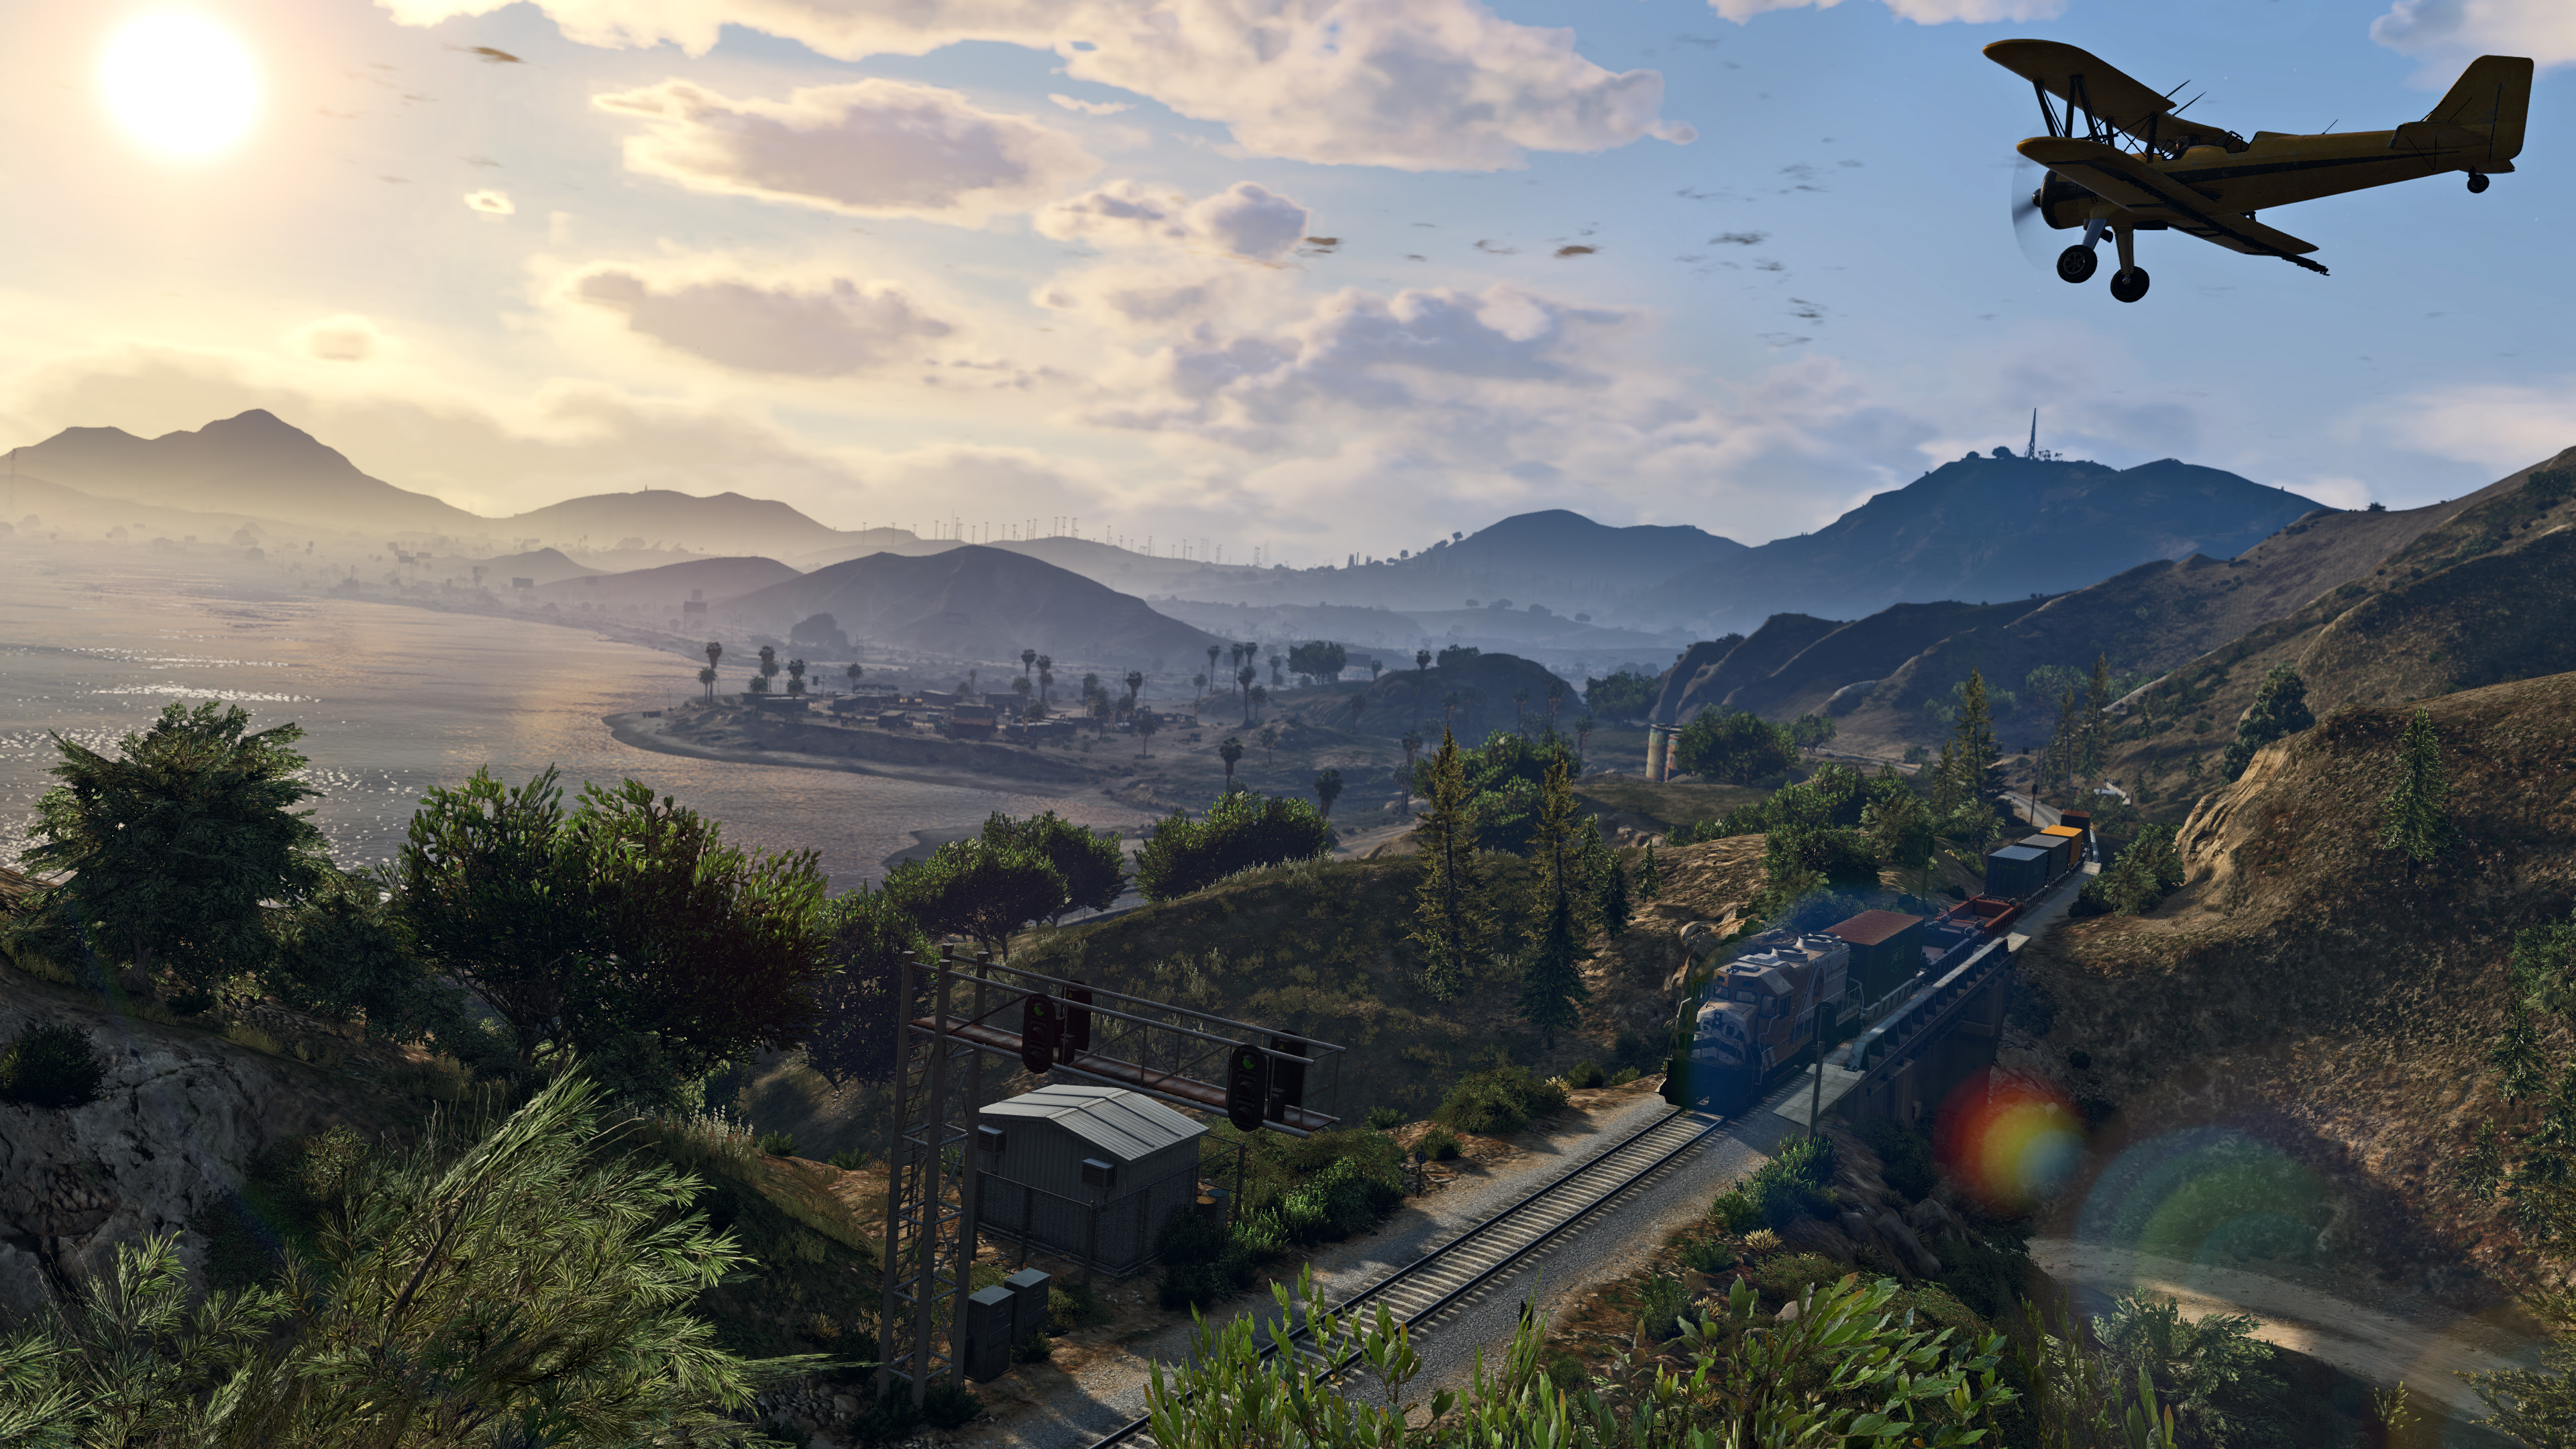 GTA 5 Mods - Grand Theft Auto V PC Mods